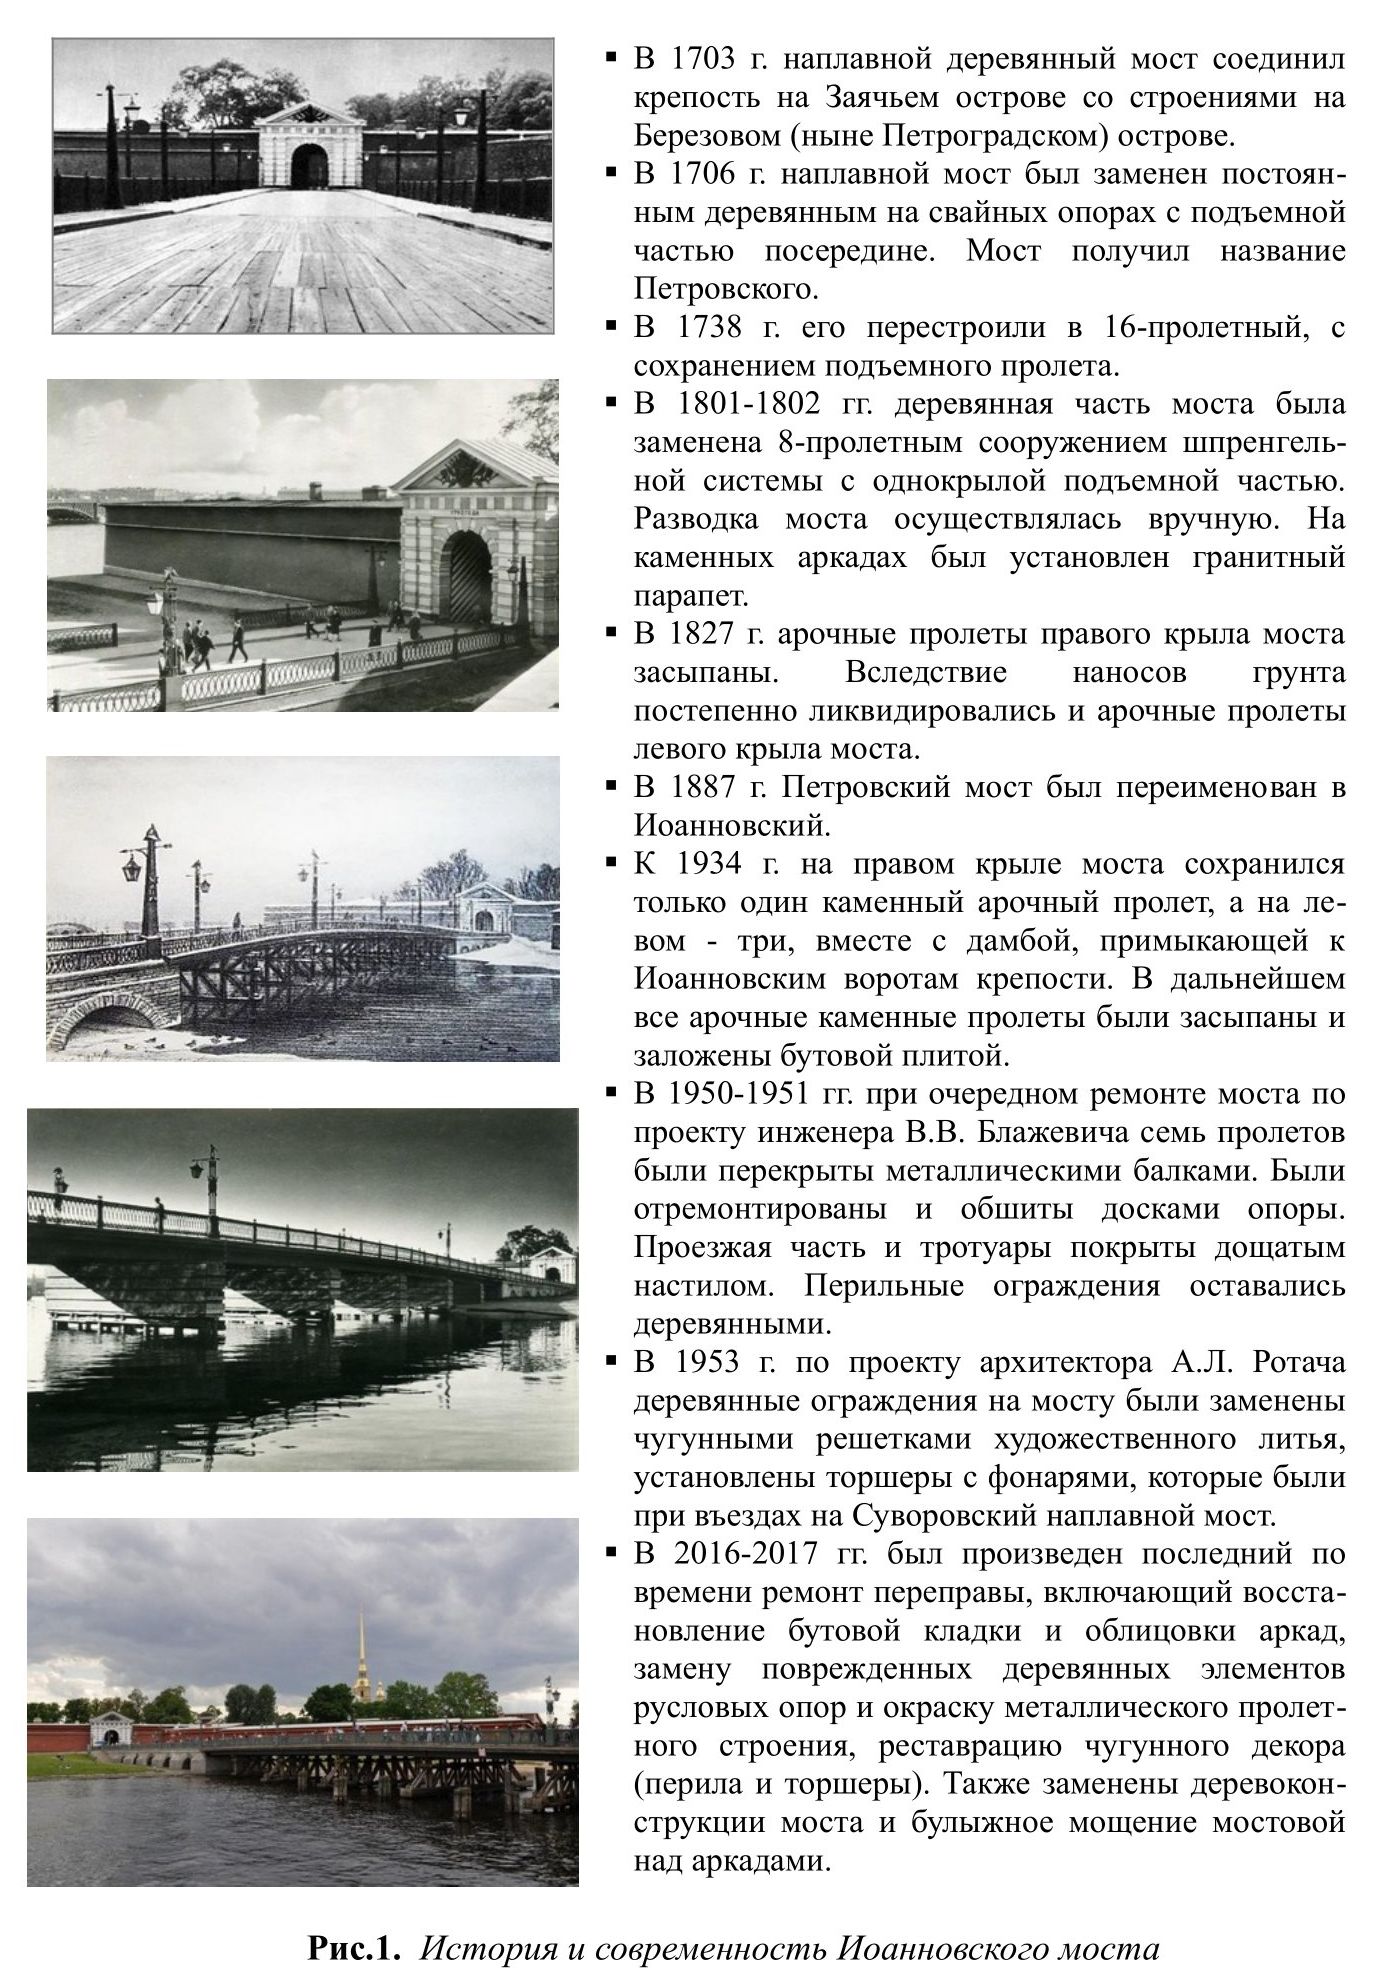 Рис.1.  История и современность Иоанновского моста